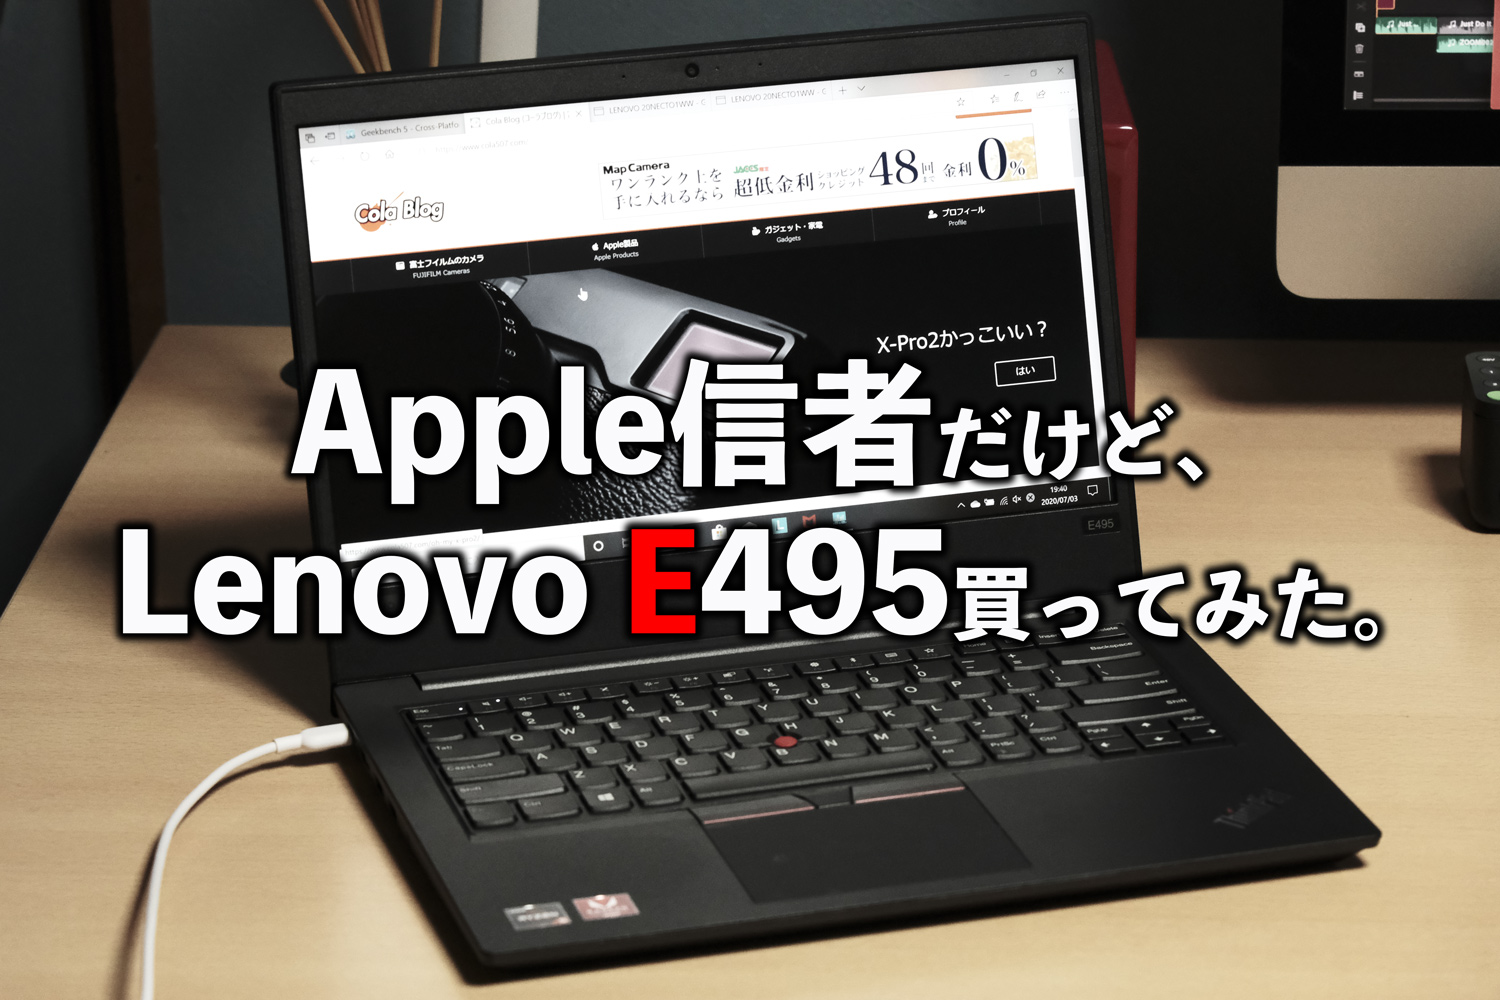 ThinkPad E495 SSD128+240GB メモリ8GB 英語 65W